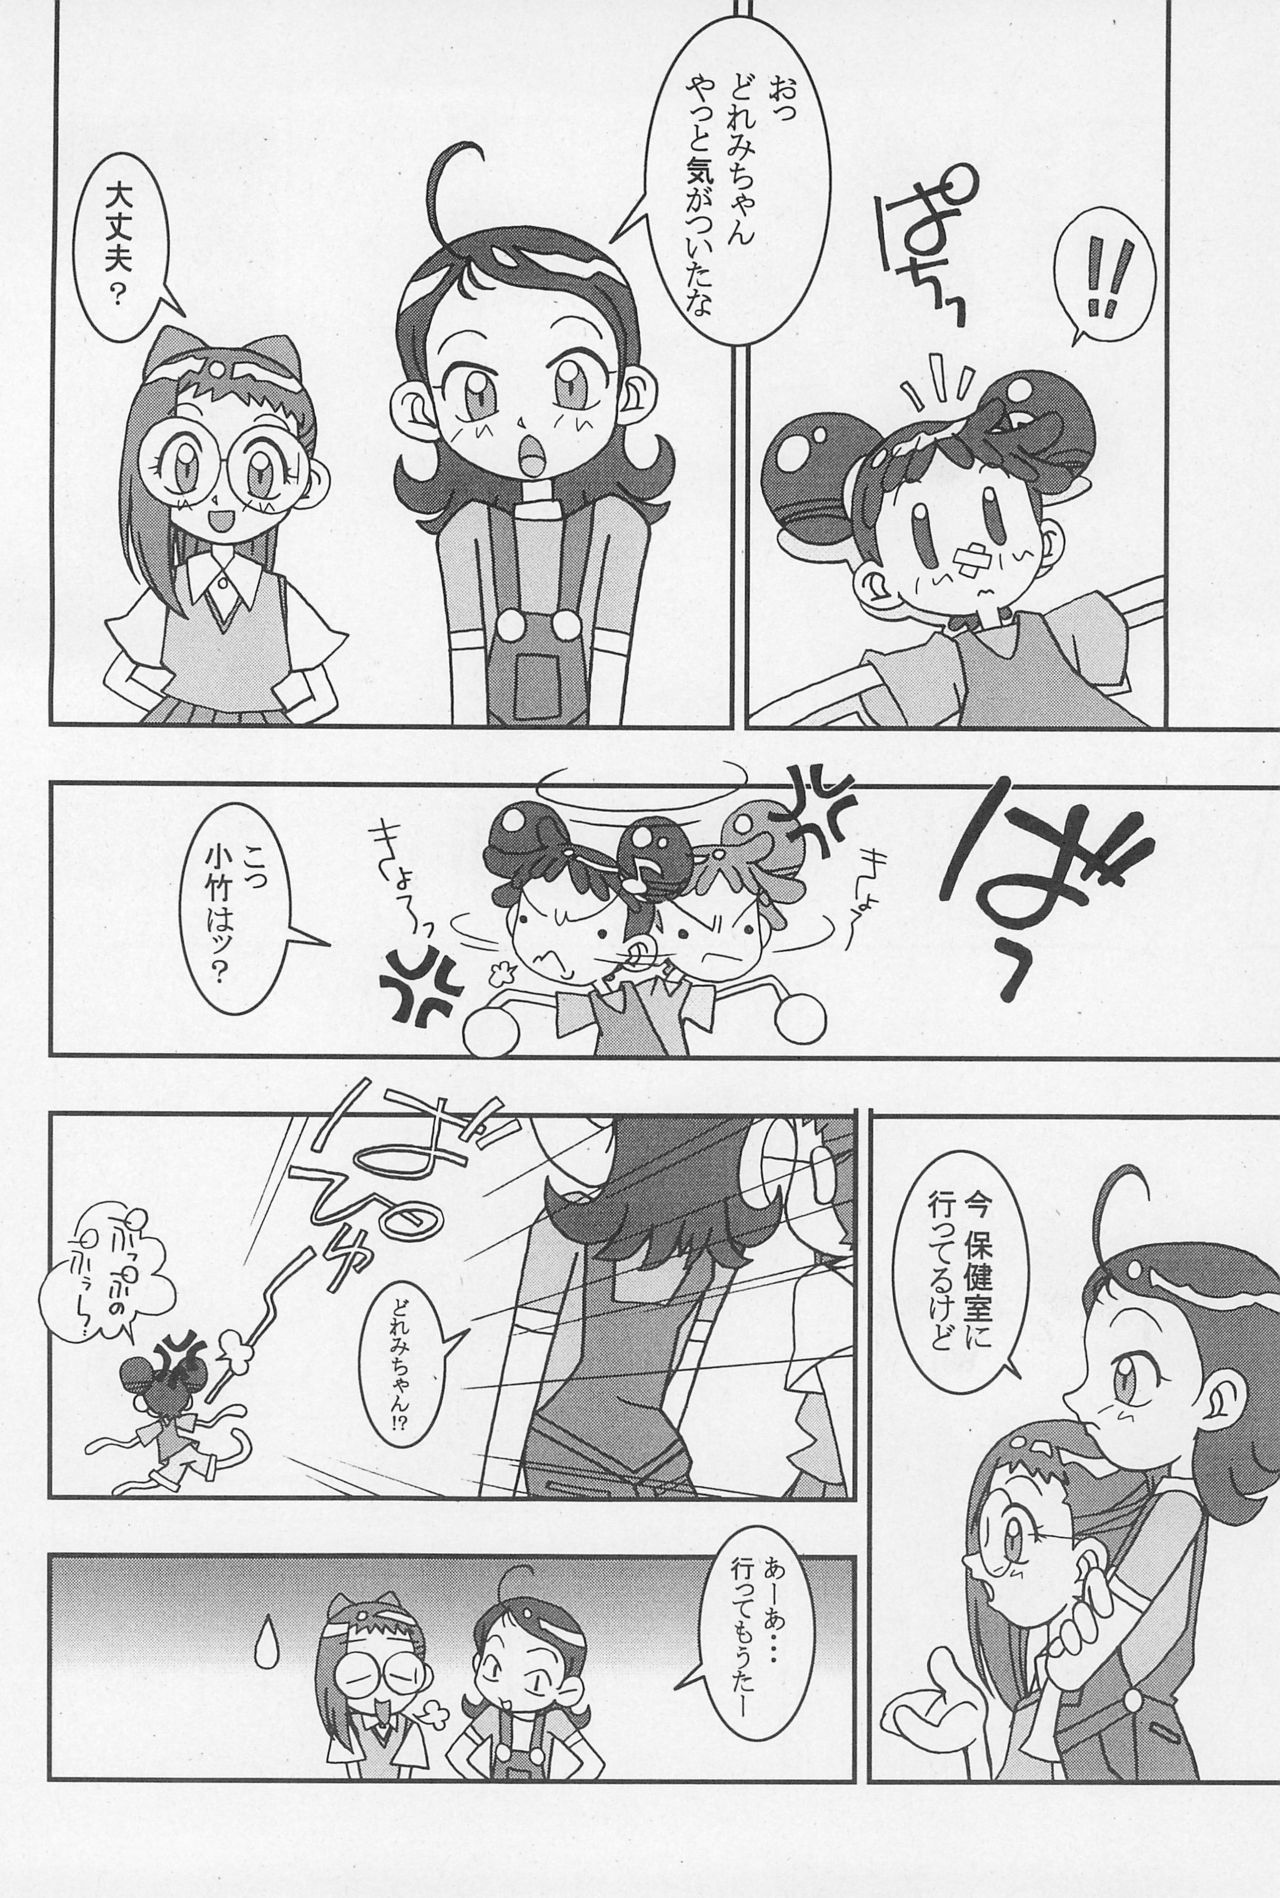 (CR25) [Nekketsu Kouenji Housoukyoku, KENIX (Katori Youichi, Ninnin!)] Doremi Fa So La Si Do (Ojamajo Doremi) page 26 full